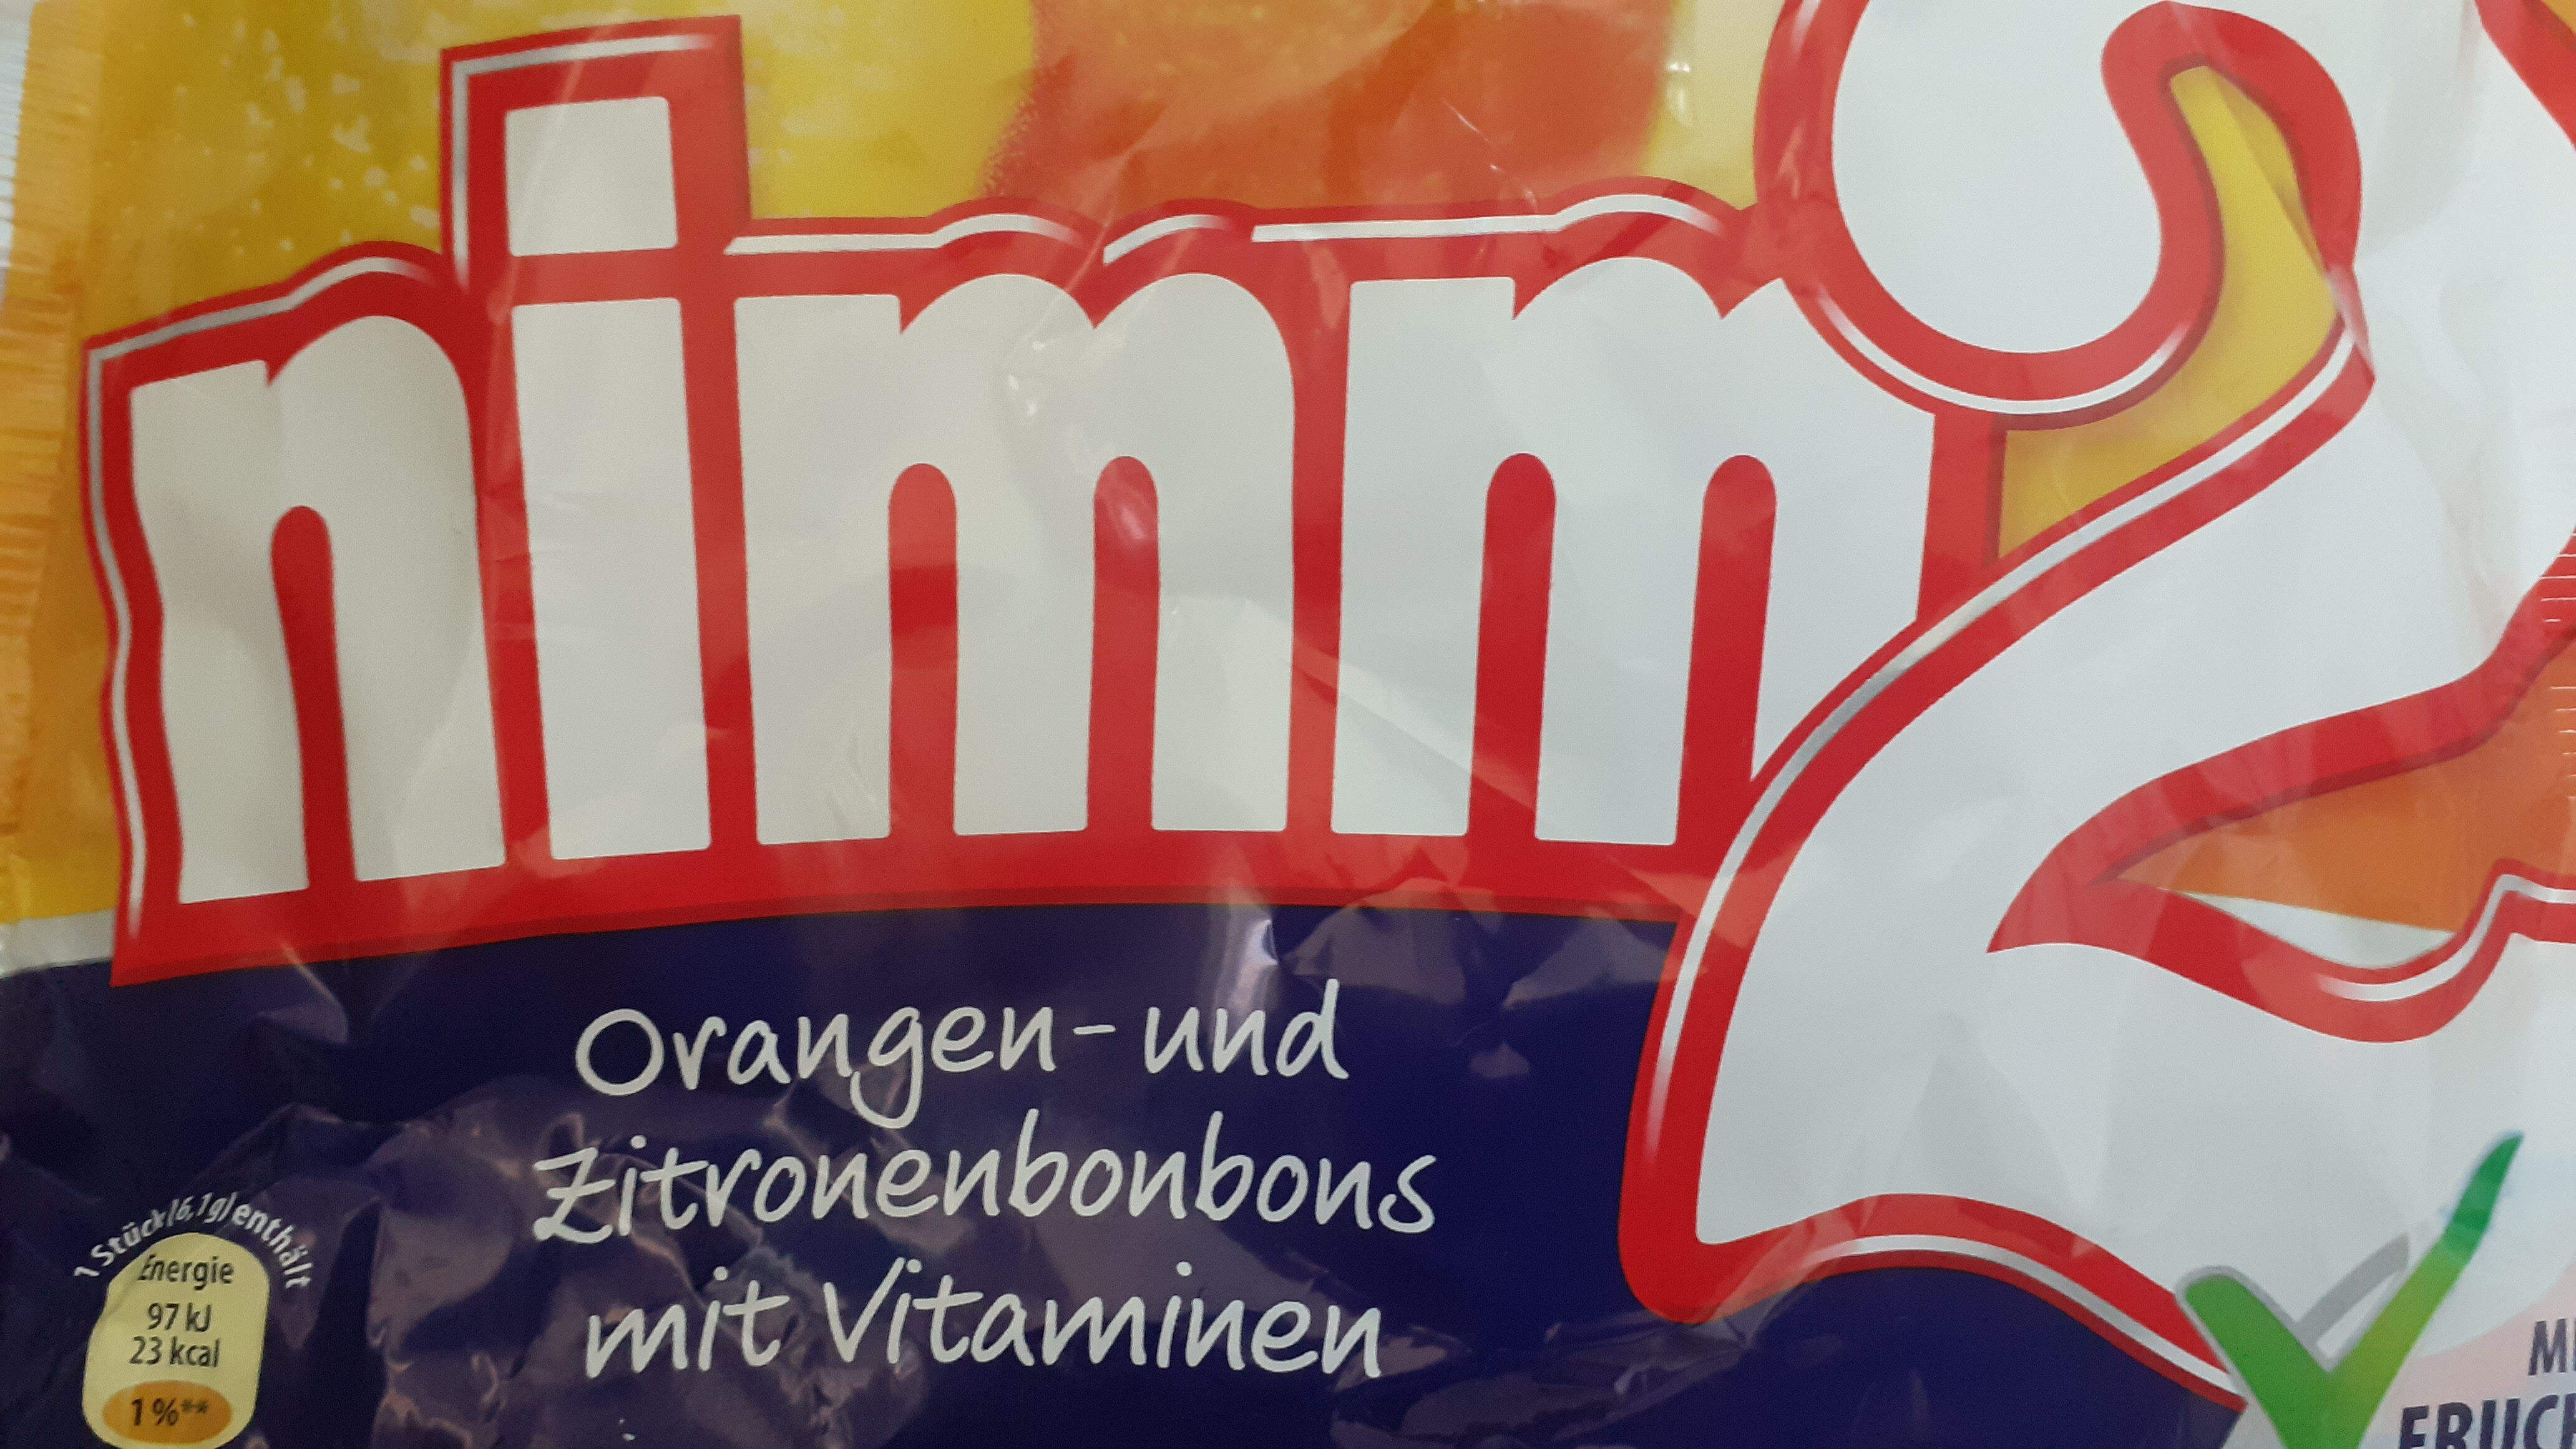 nimm2 Orangen - und Zitronenbonboms mit Vvitaminen - Product - de